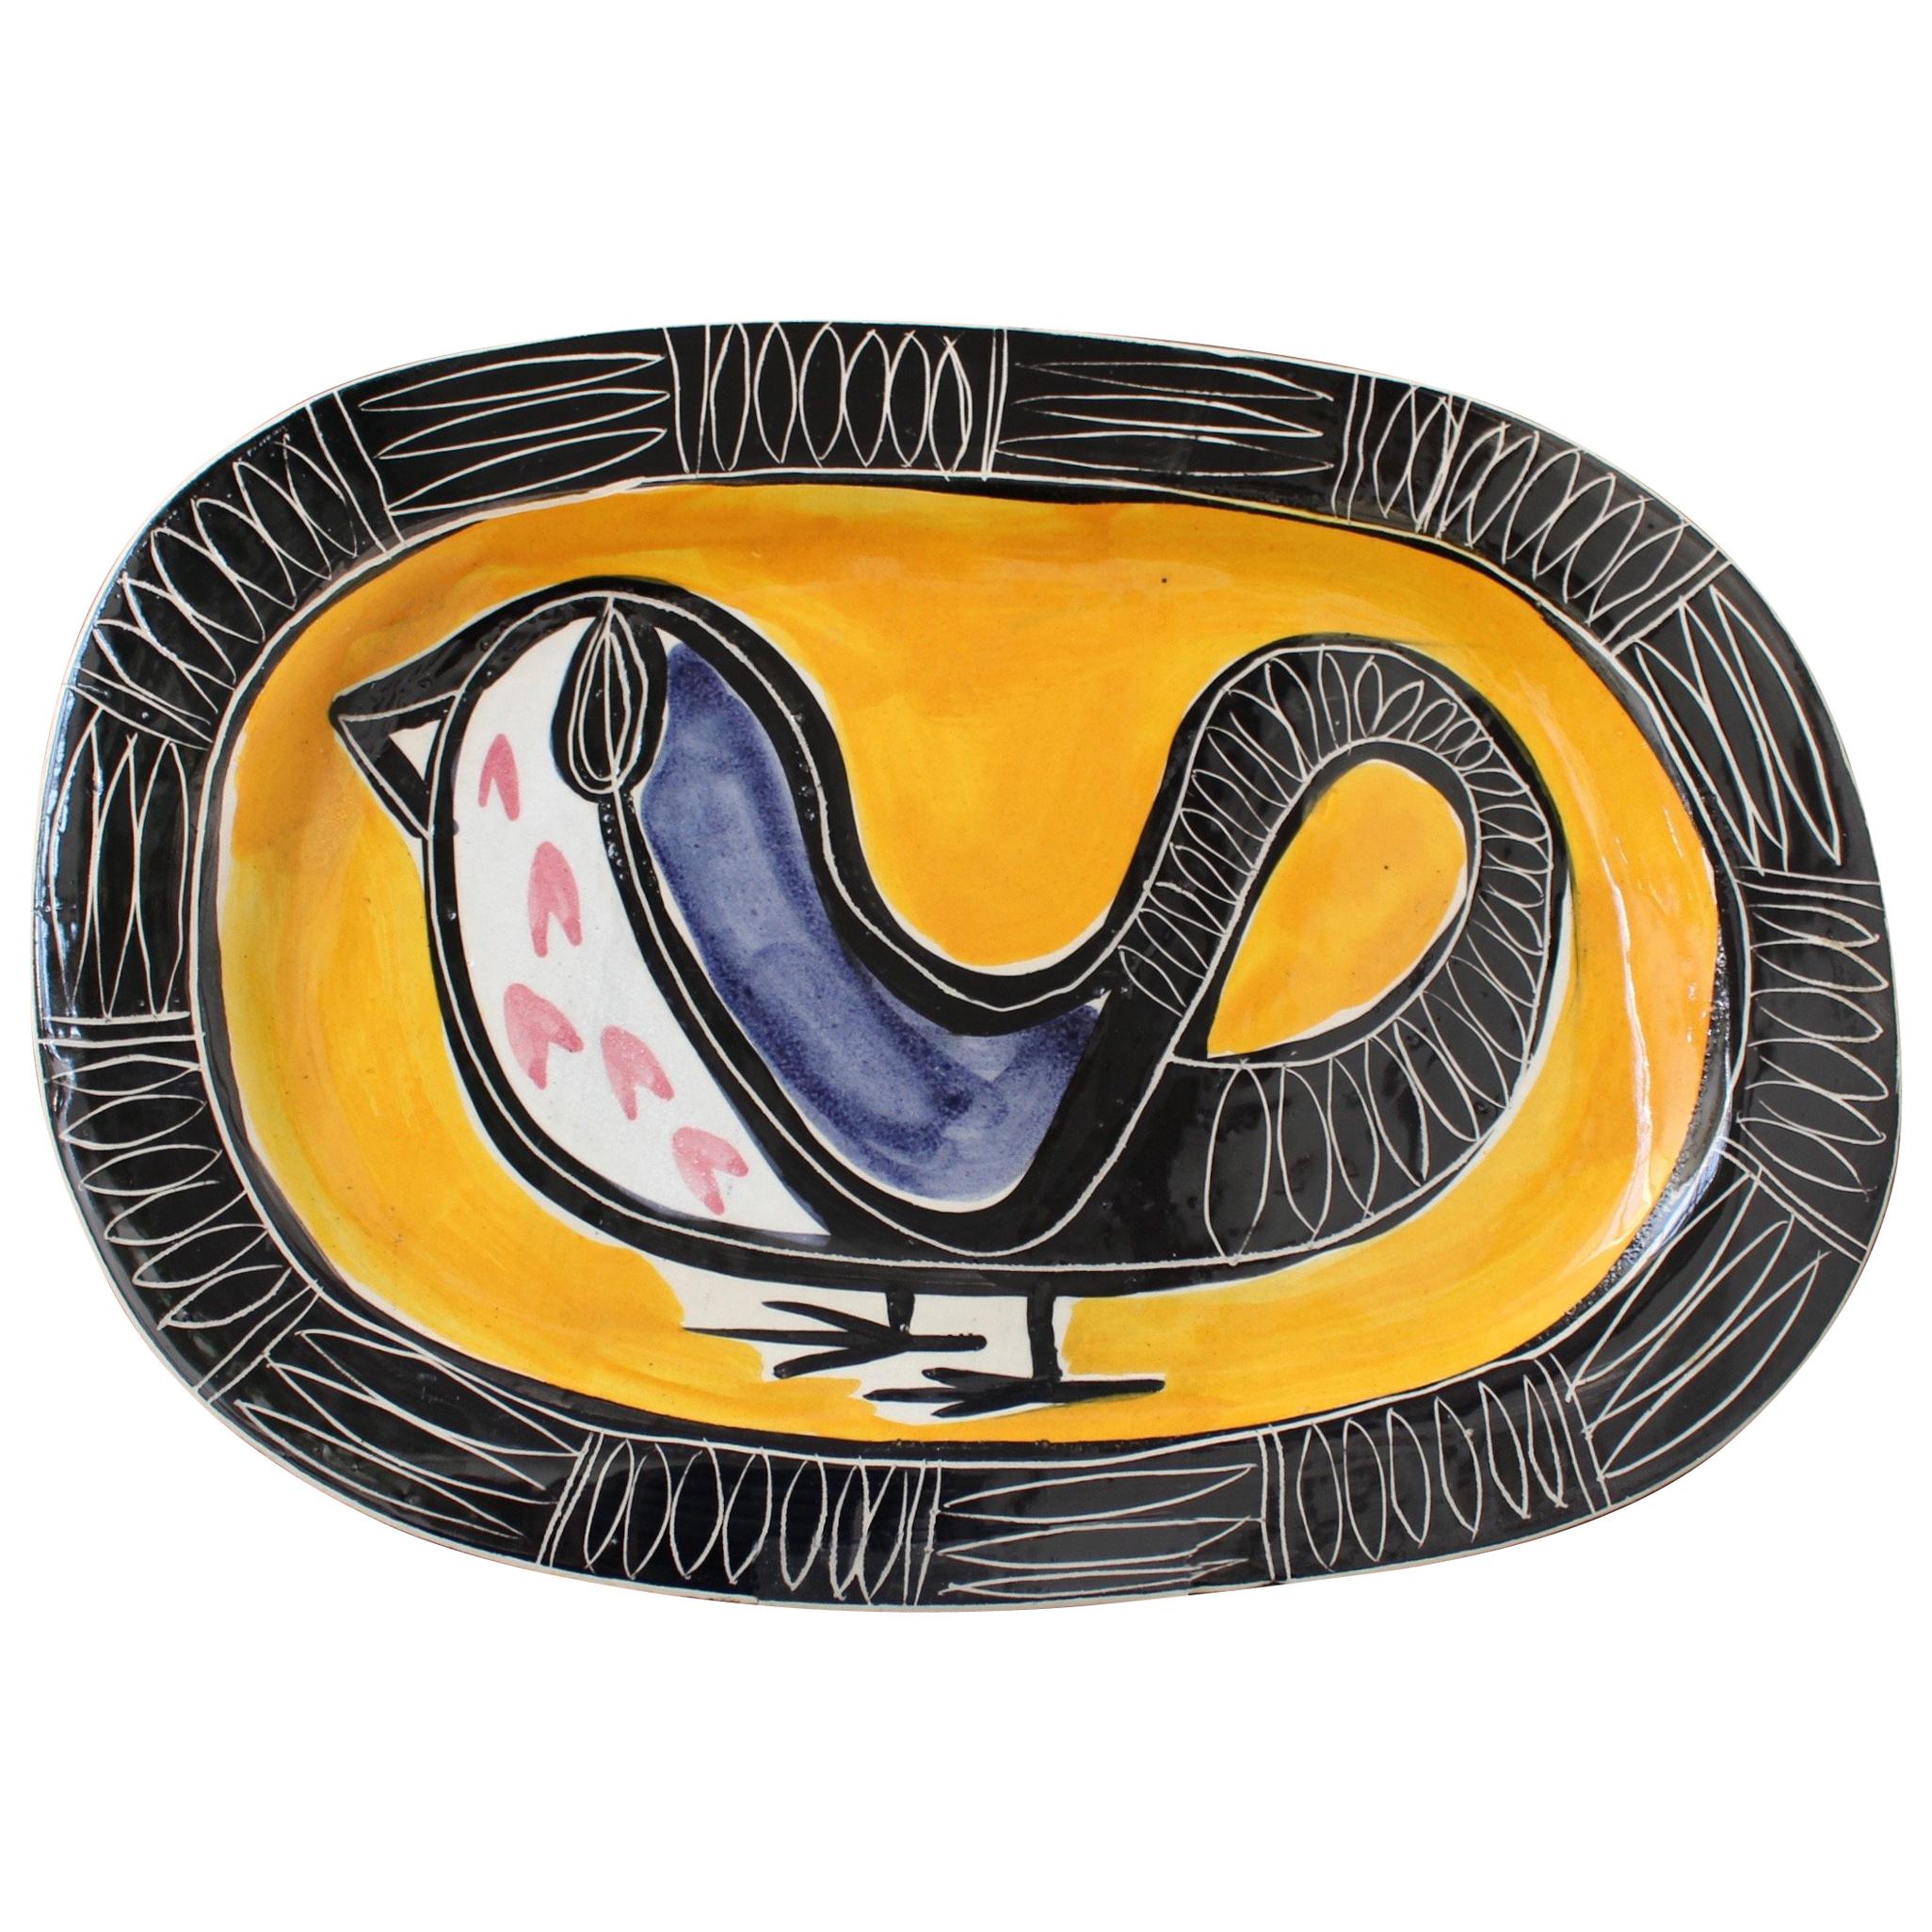 Ceramic Decorative Platter with Bird Motif by Jacques Pouchain - Poët-Laval